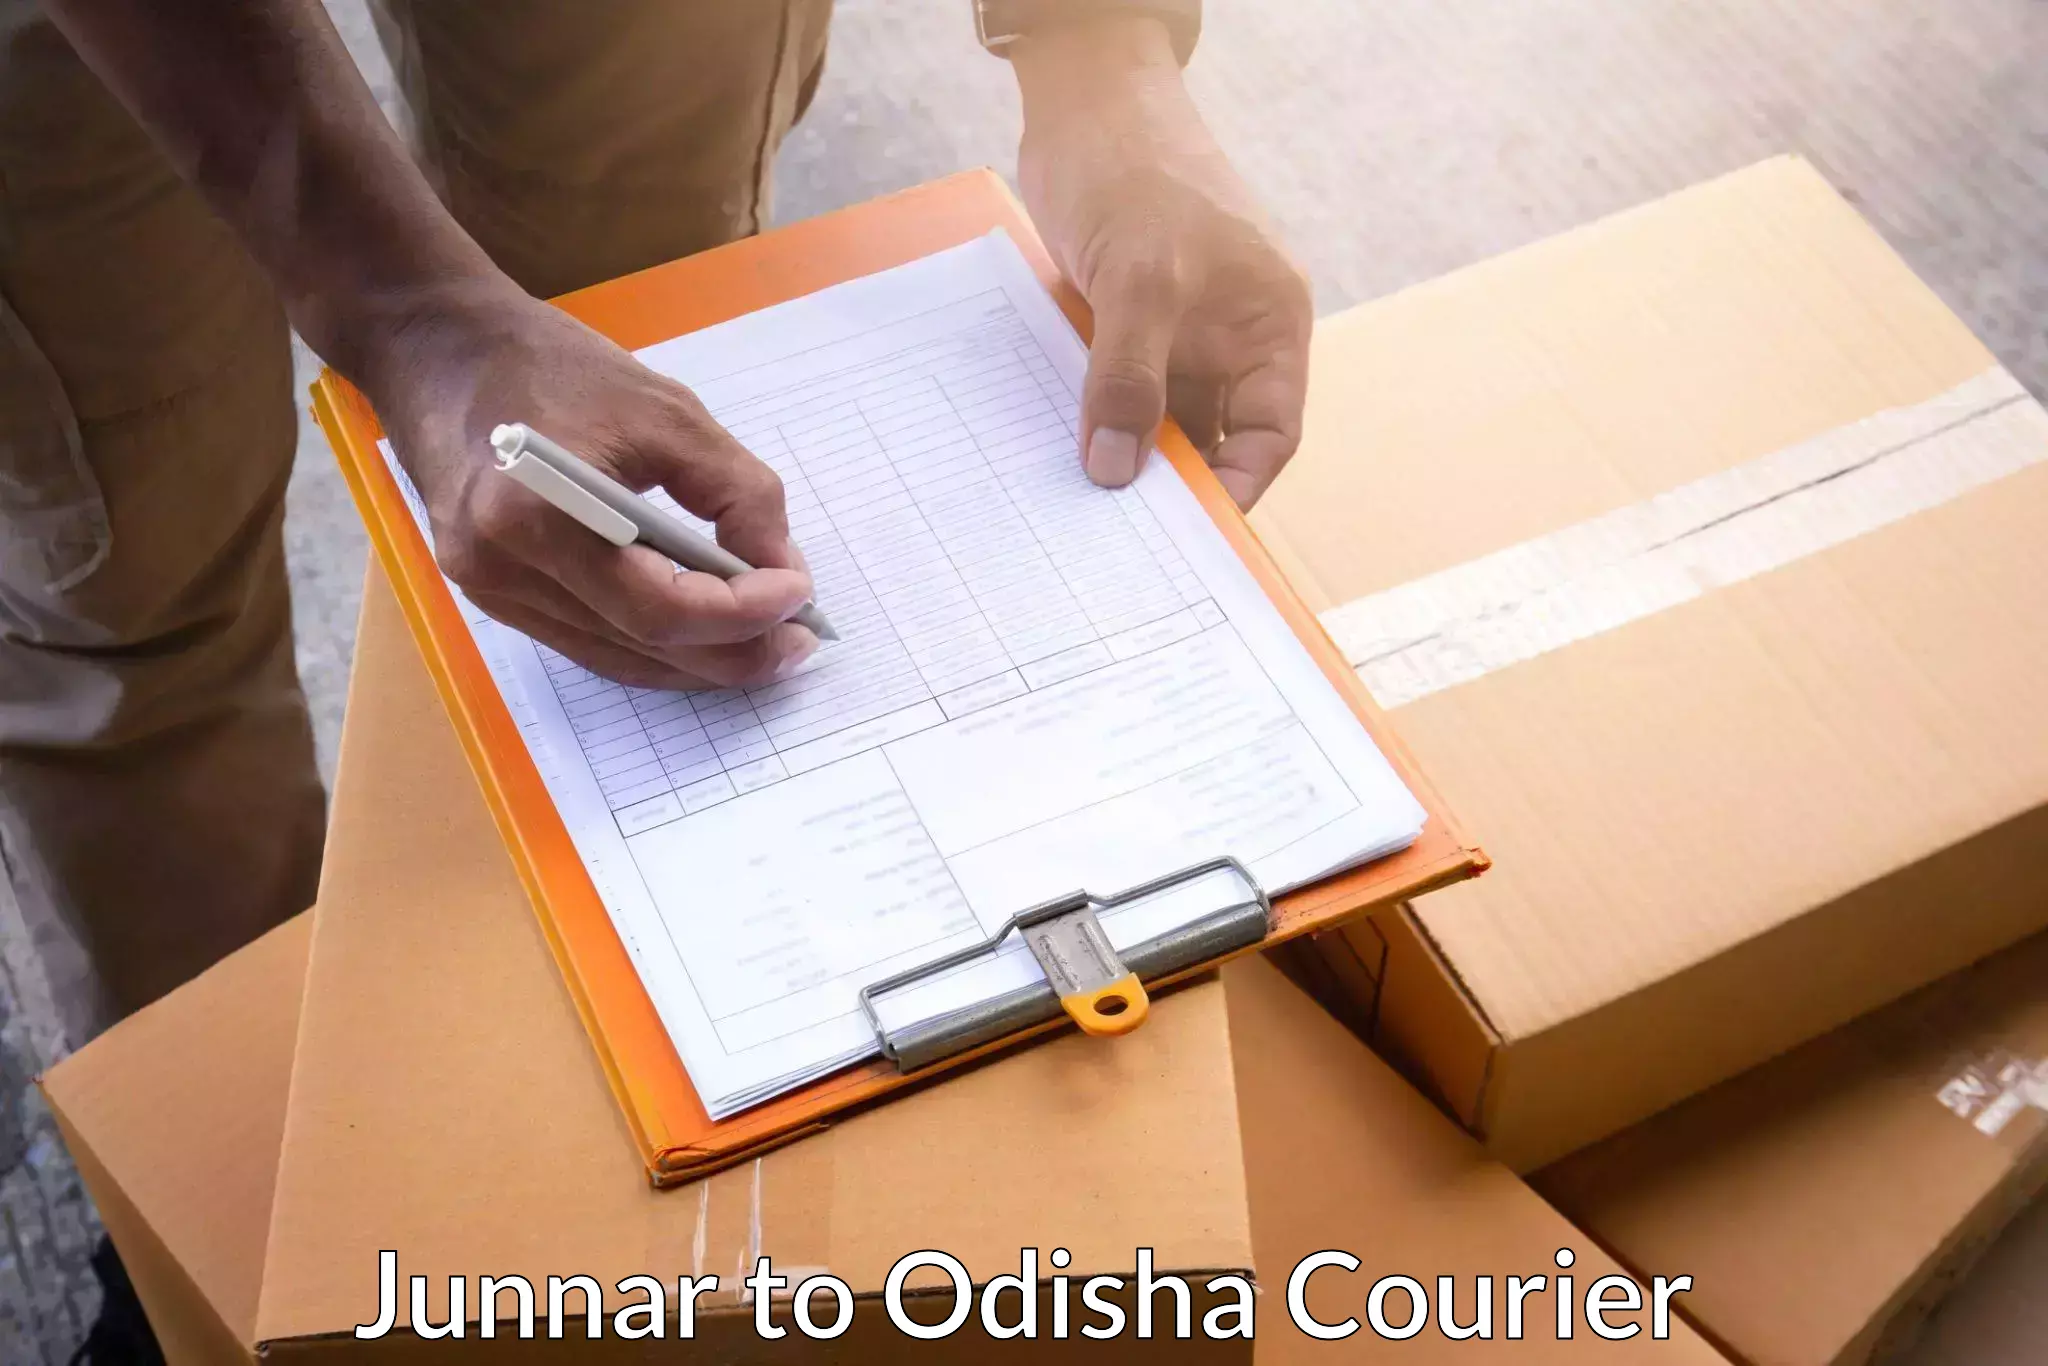 Local delivery service Junnar to Muniguda